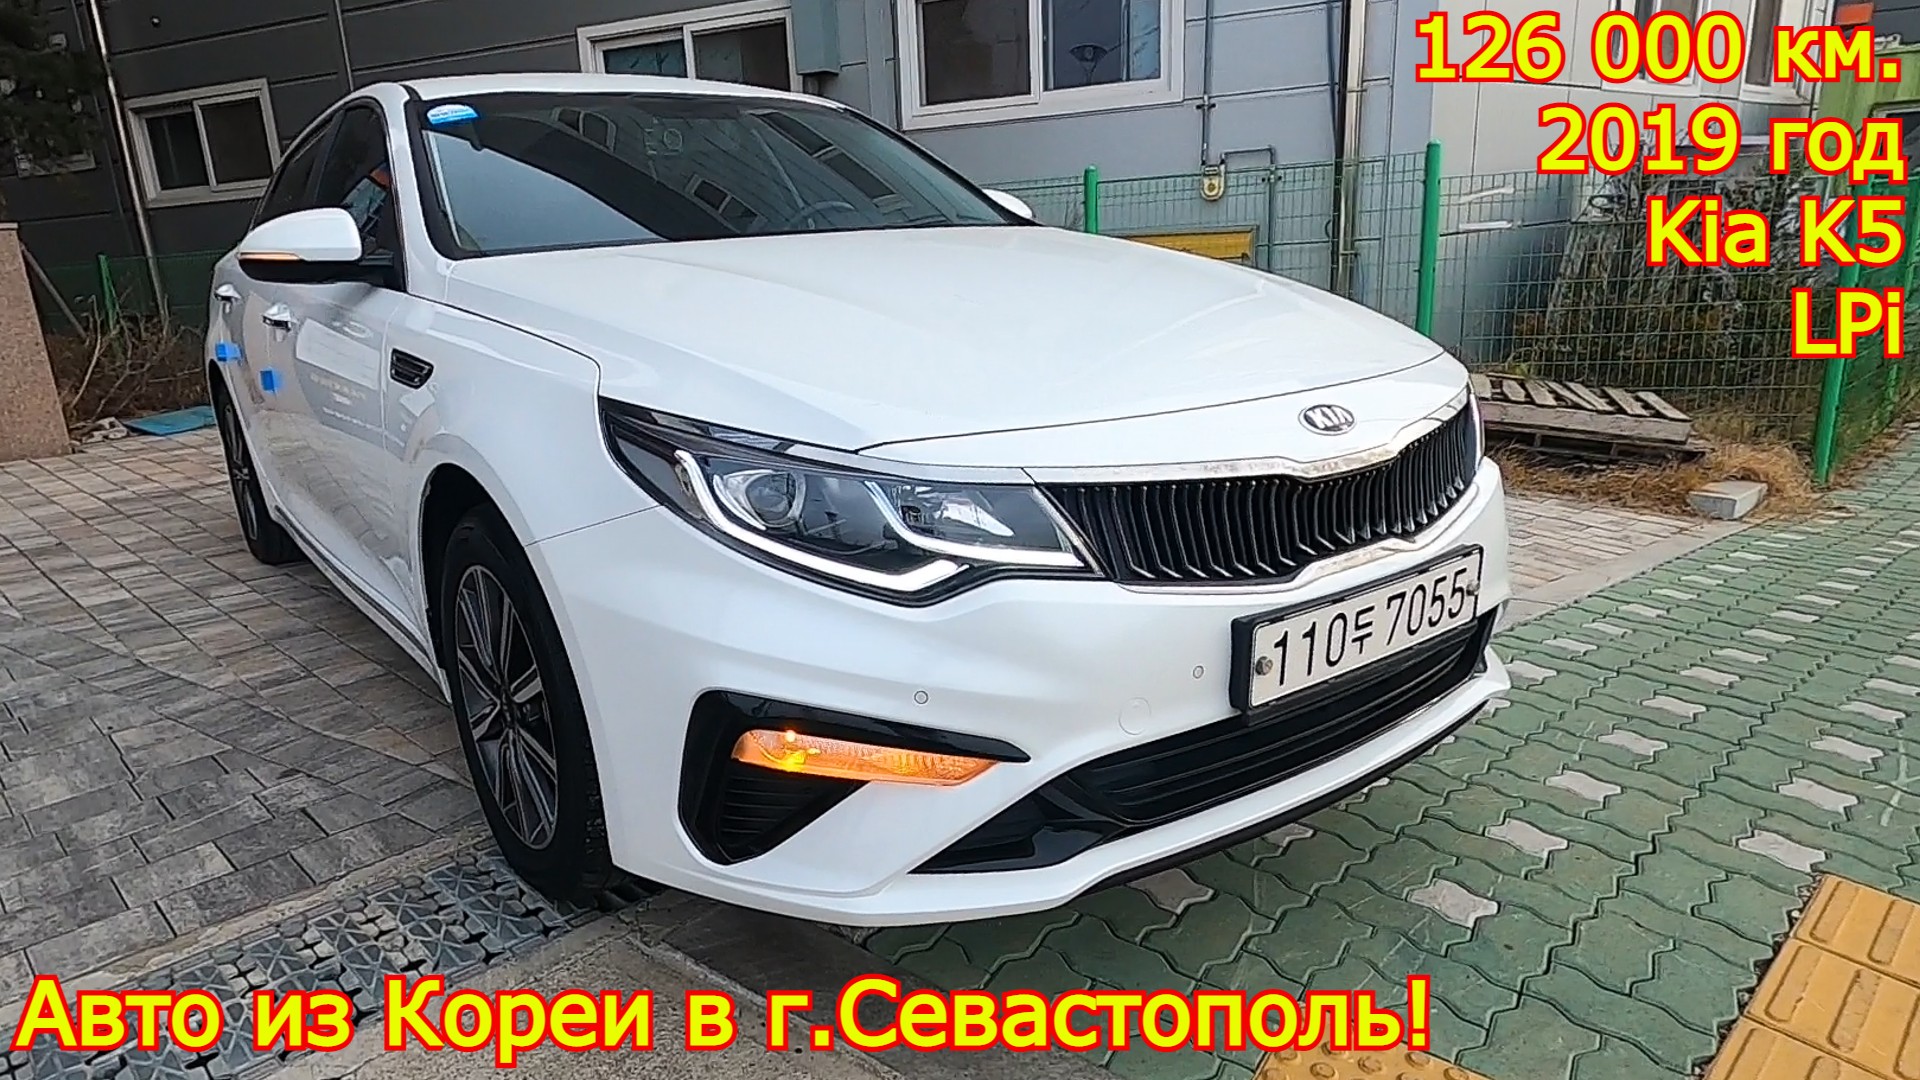 Авто из Кореи в г. Севастополь - Kia K5, 2019 год, 126 000 км., LPi (газовый двигатель)!